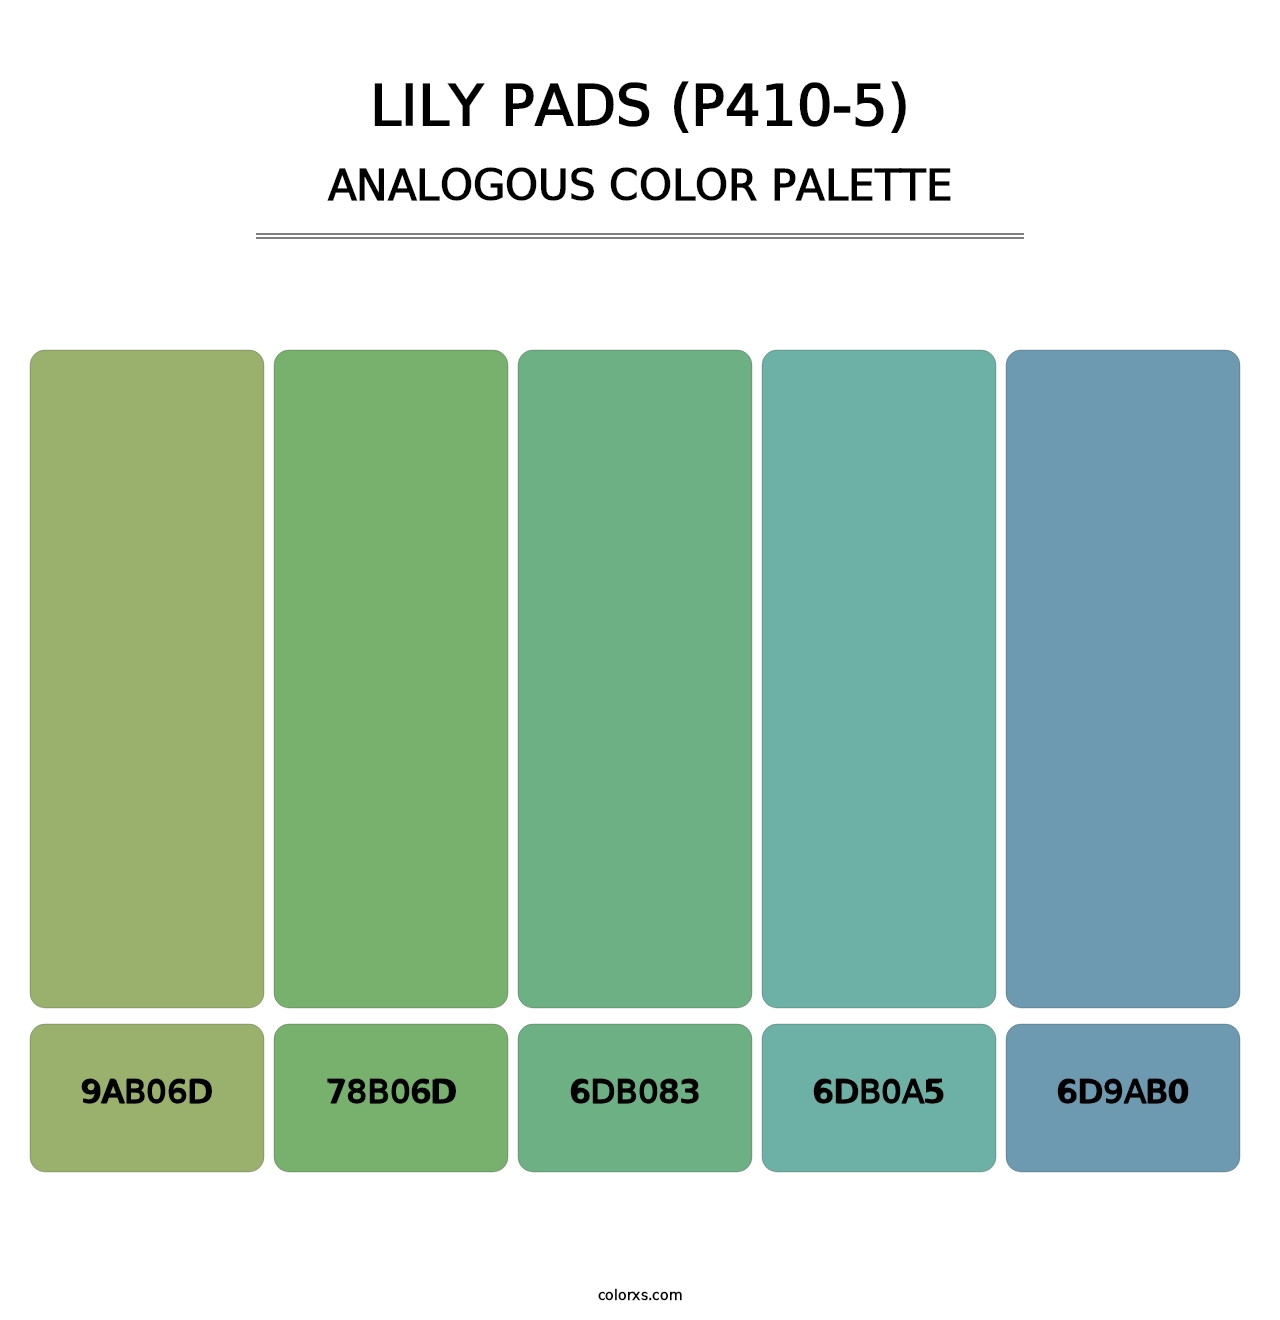 Lily Pads (P410-5) - Analogous Color Palette